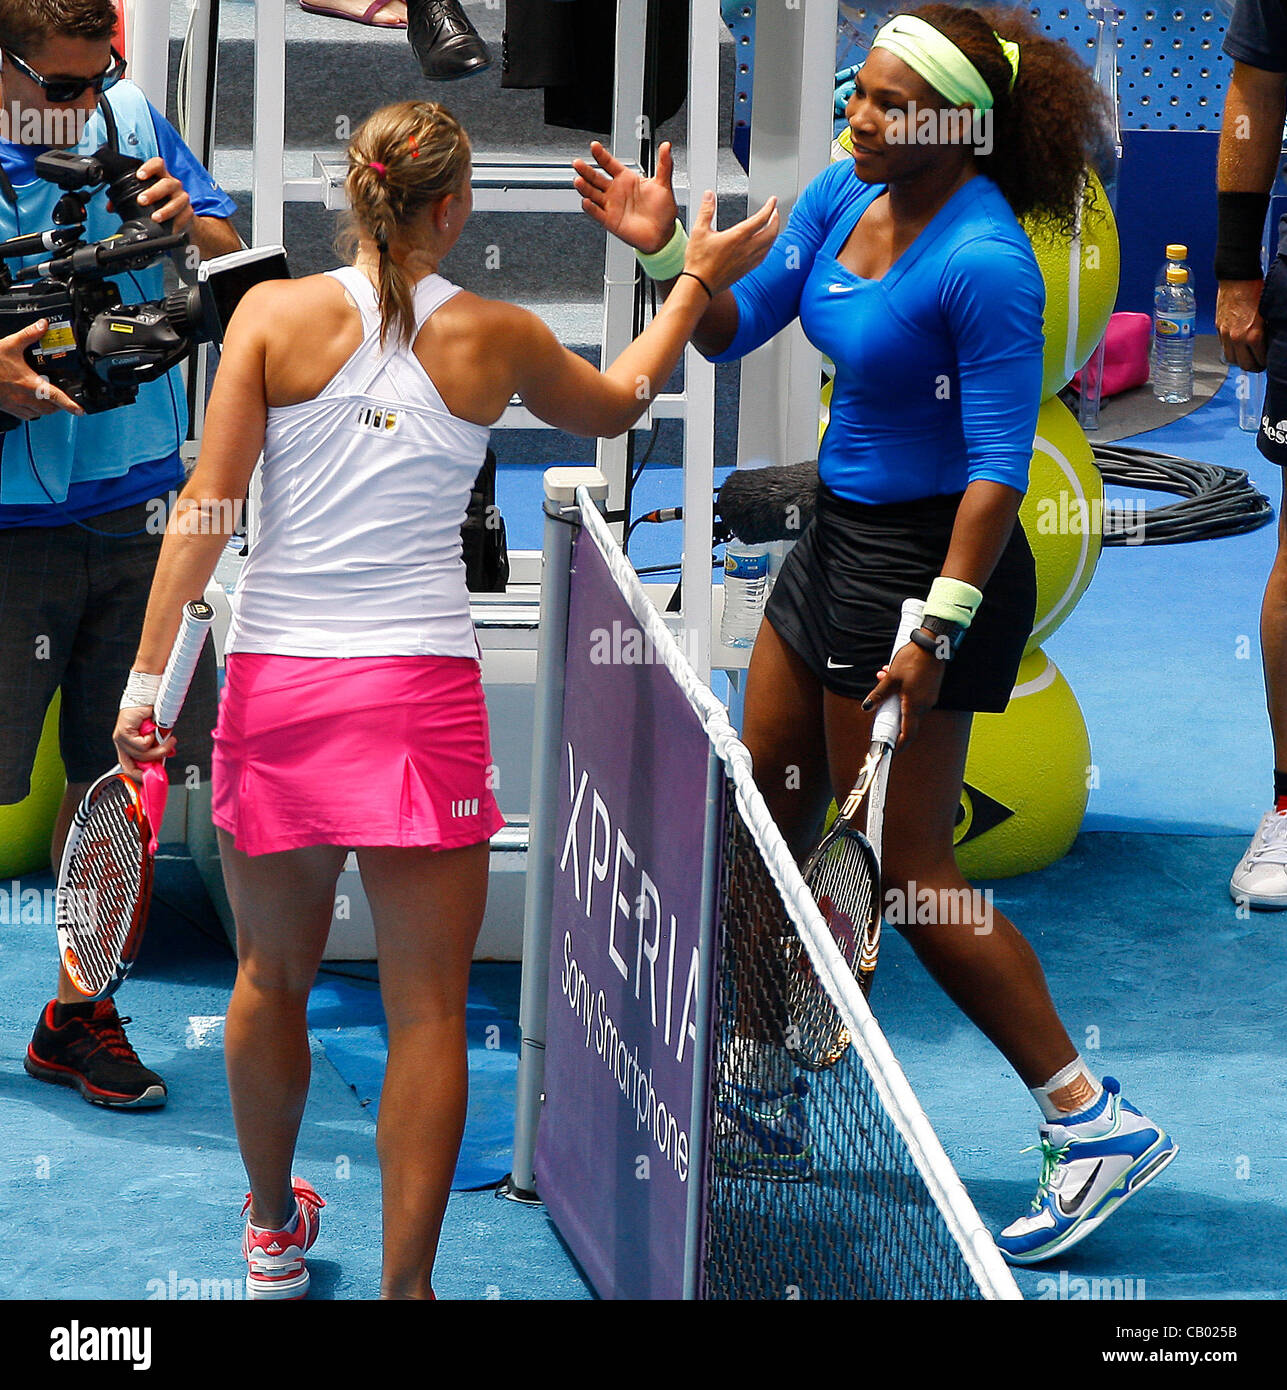 12.05.2012 Madrid, Spanien. Lucie Hradecka in Aktion gegen Serena Williams während das Halbfinale Einzel WTA Madrid Masters-Tennisturnier. Stockfoto